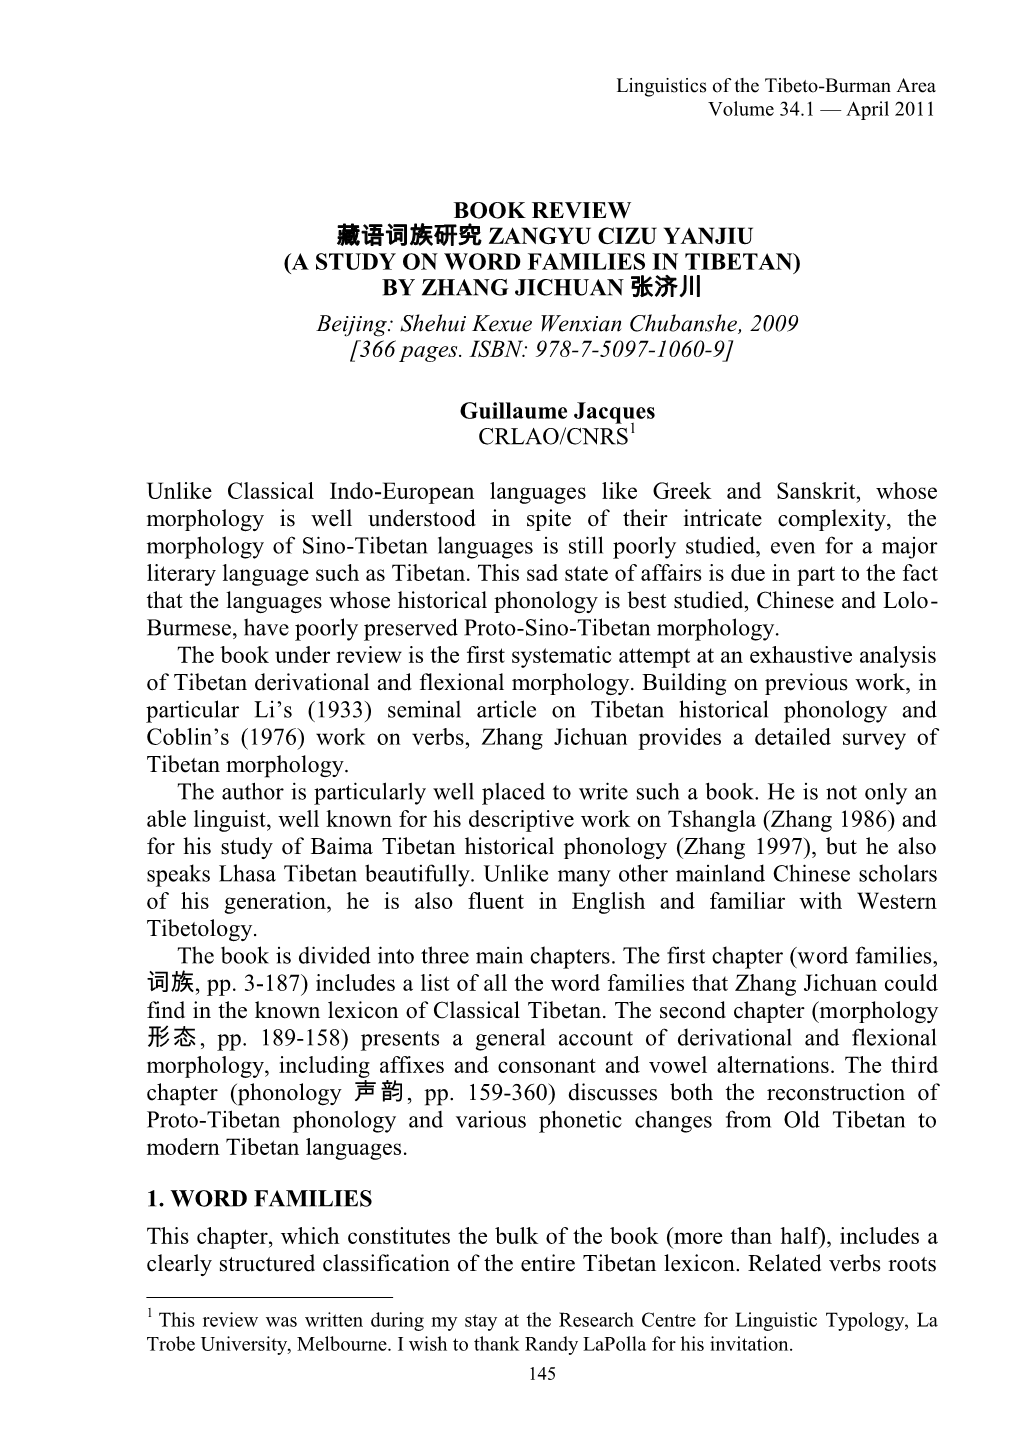 BOOK REVIEW 藏语词族研究 ZANGYU CIZU YANJIU (A STUDY on WORD FAMILIES in TIBETAN) by ZHANG JICHUAN 张济川 Beijing: Shehui Kexue Wenxian Chubanshe, 2009 [366 Pages